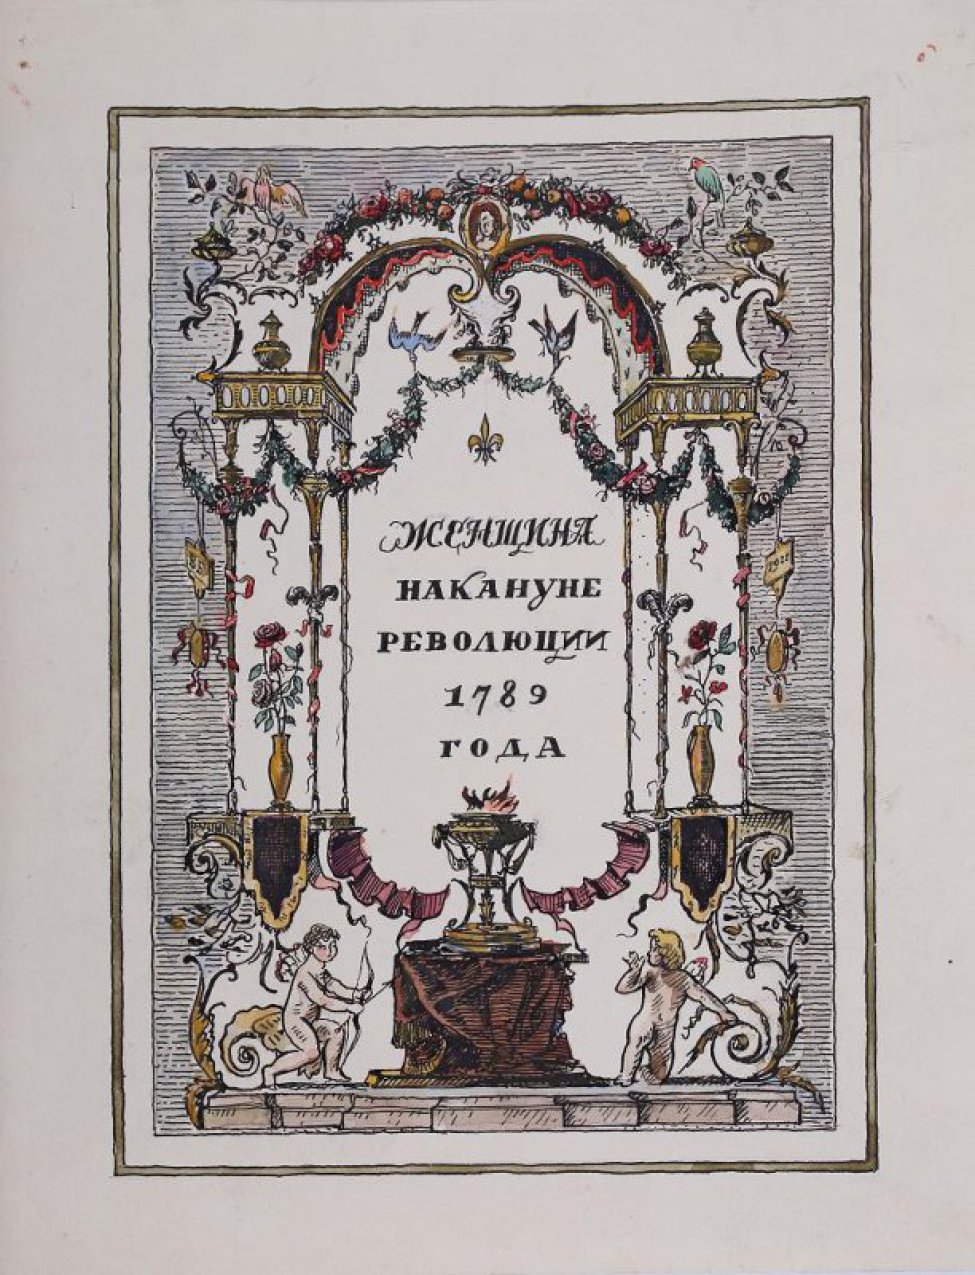 В рамке на заштрихованном фоне изображена арка, вверху увитая цветочными венками, веточками, на которых сидят птицы, на колоннах изображены сосуды. В нижней части в центре изображен сосуд стоящий на возвышении с горящим огнем, по сторонам - амуры. В центре композиции надпись: Женщина накануне революции 1789 года.